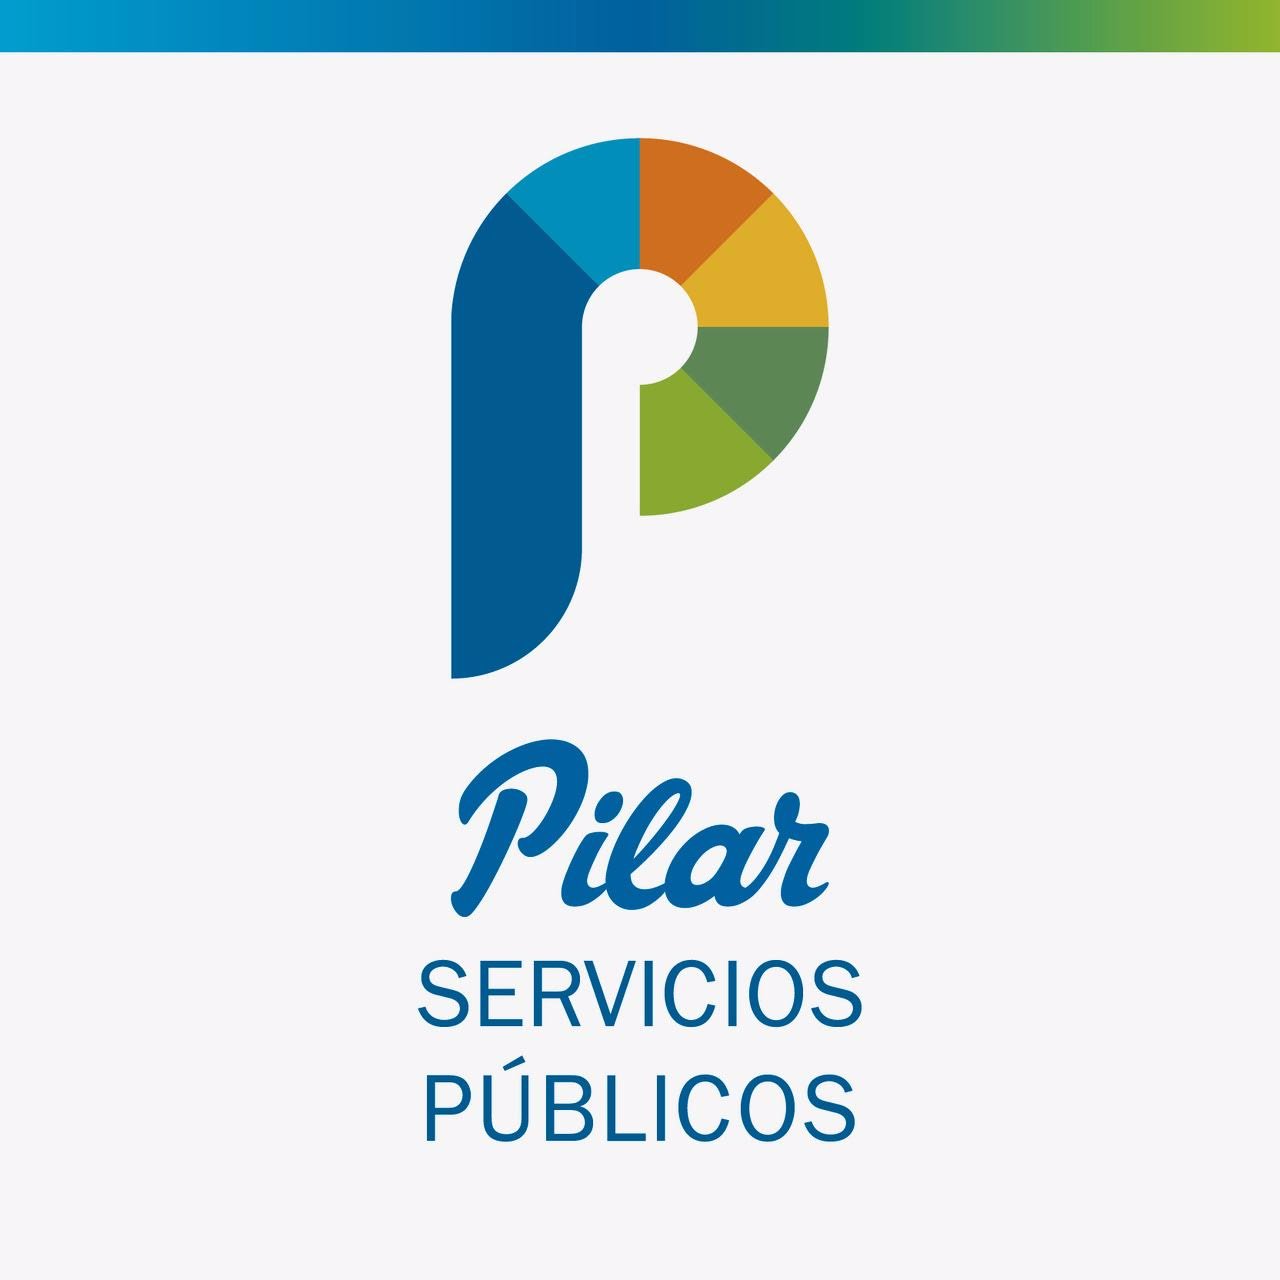 Cuenta oficial de la Secretaría de Servicios Públicos - Municipalidad del Pilar